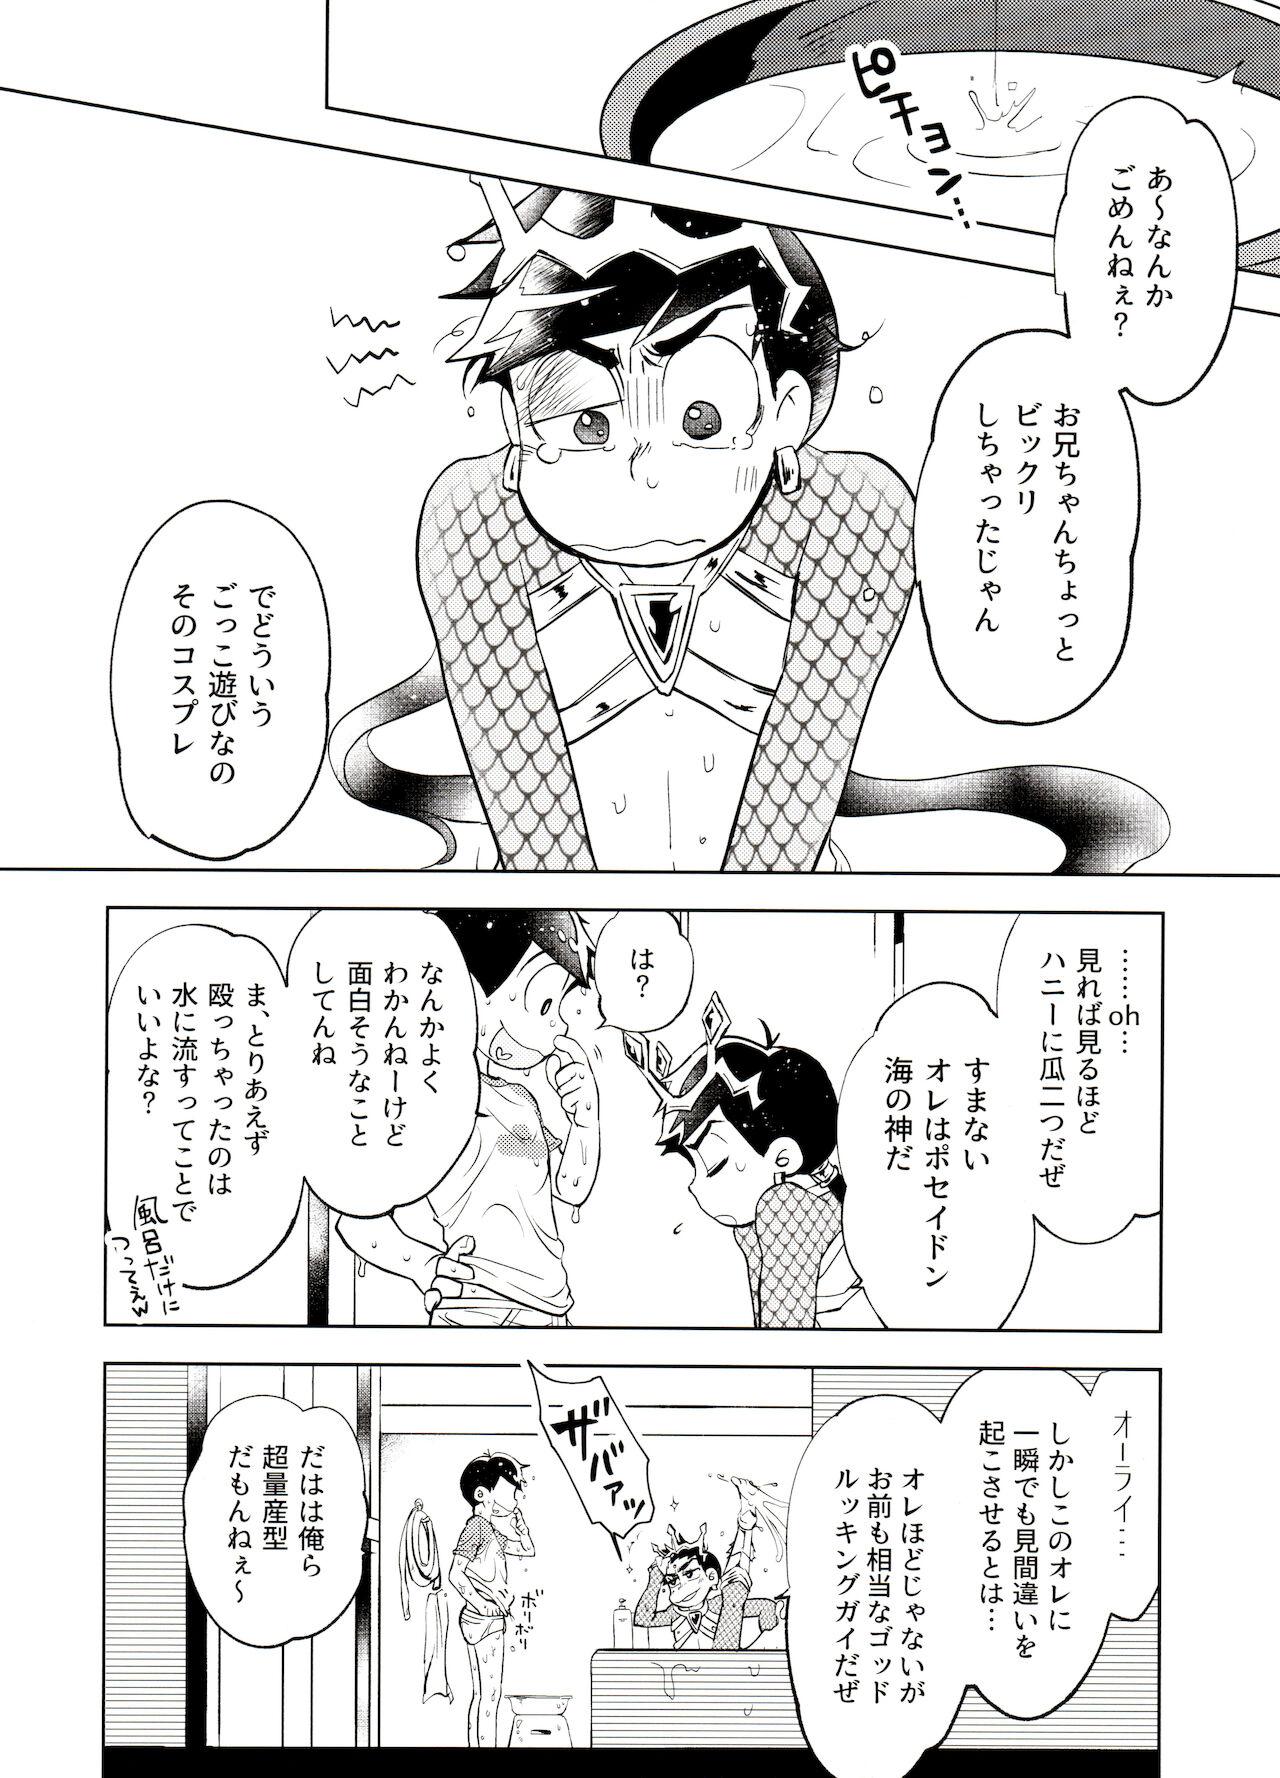 Handjob Honjitsu wa Tokoro ni Yori Kaminari o Tomonatta Kami to Narudeshou. - Osomatsu san Chichona - Page 7